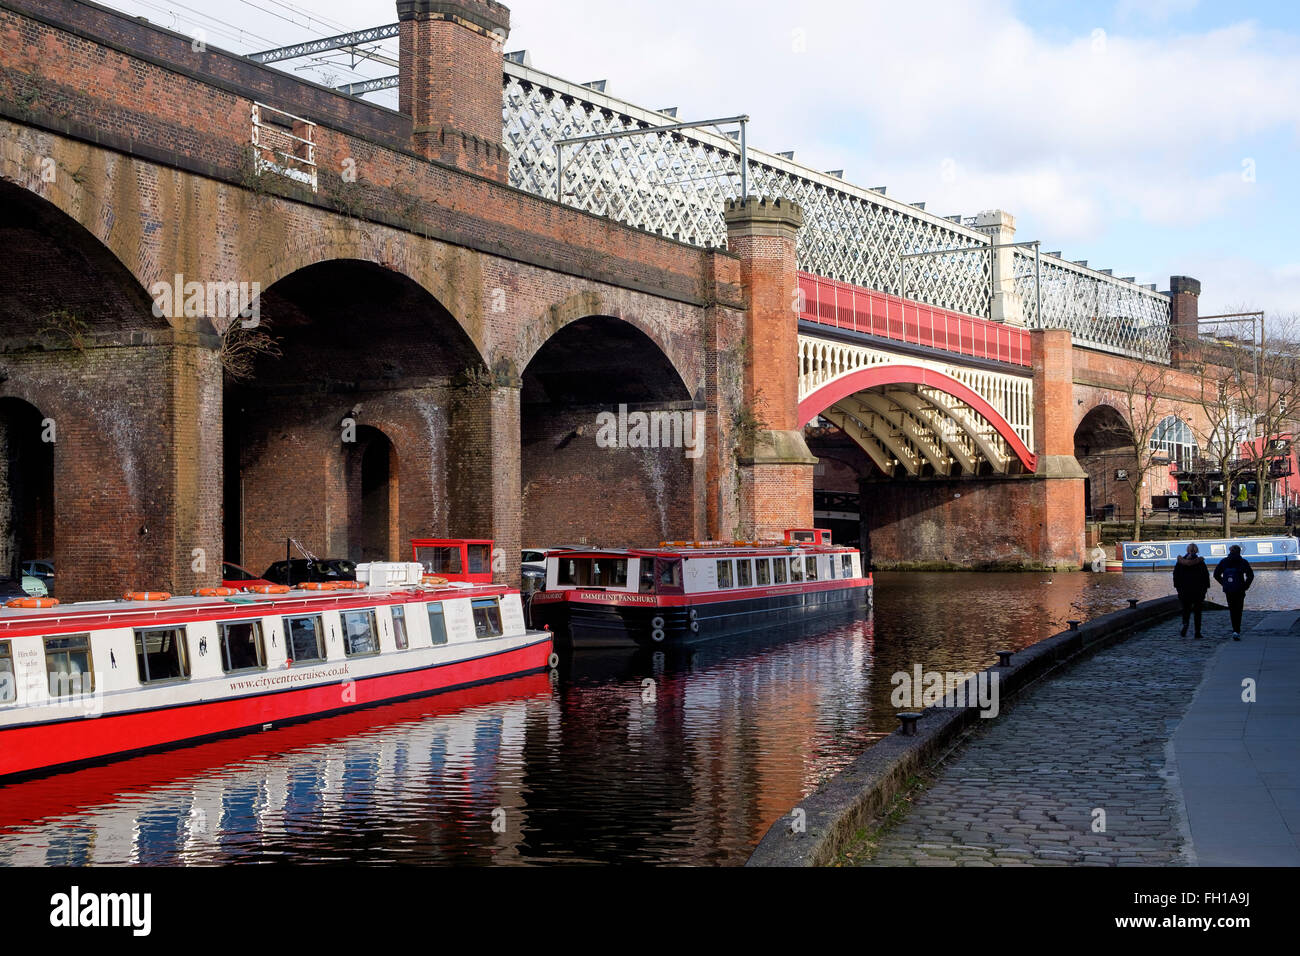 Manchester, UK - 15 Février 2016 : Victorian viaducs de chemin de fer du viaduc Castlefield au-dessus du canal de Bridgewater, Manchester Banque D'Images